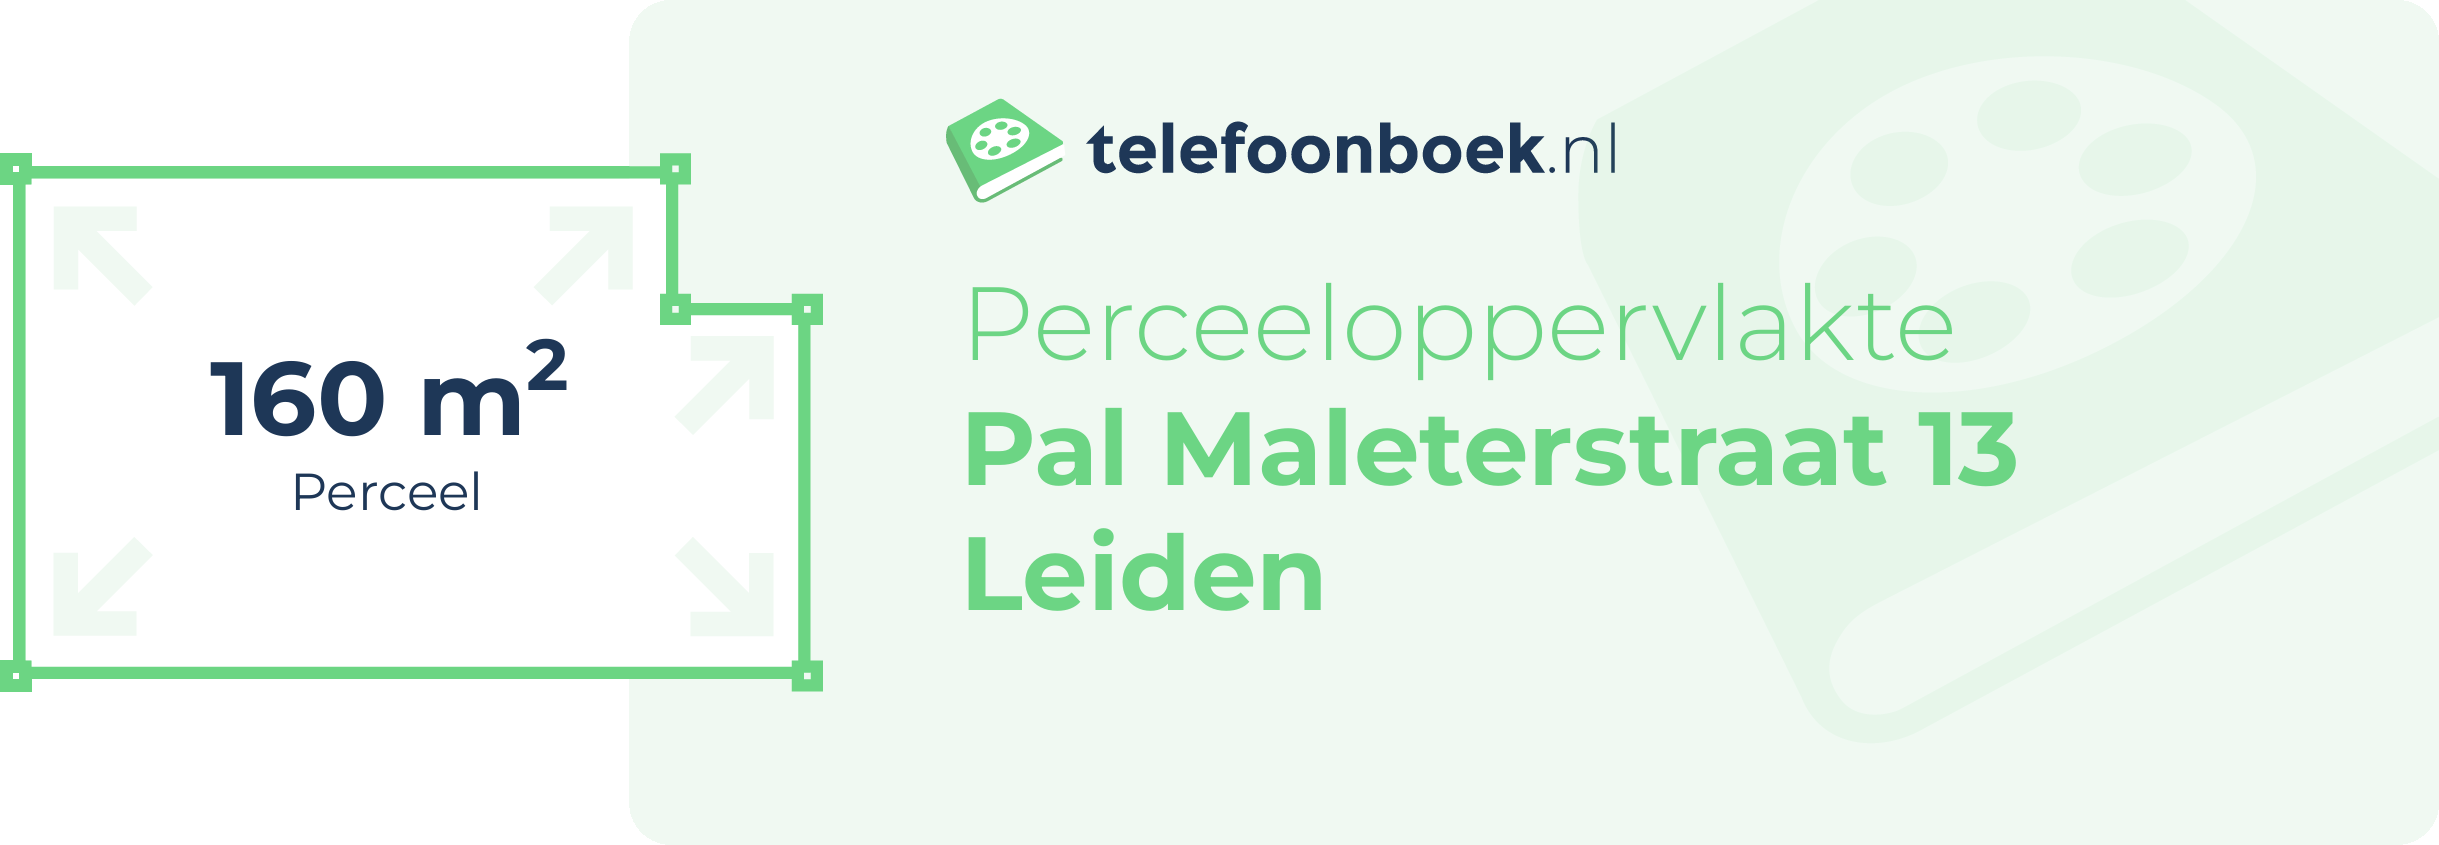 Perceeloppervlakte Pal Maleterstraat 13 Leiden